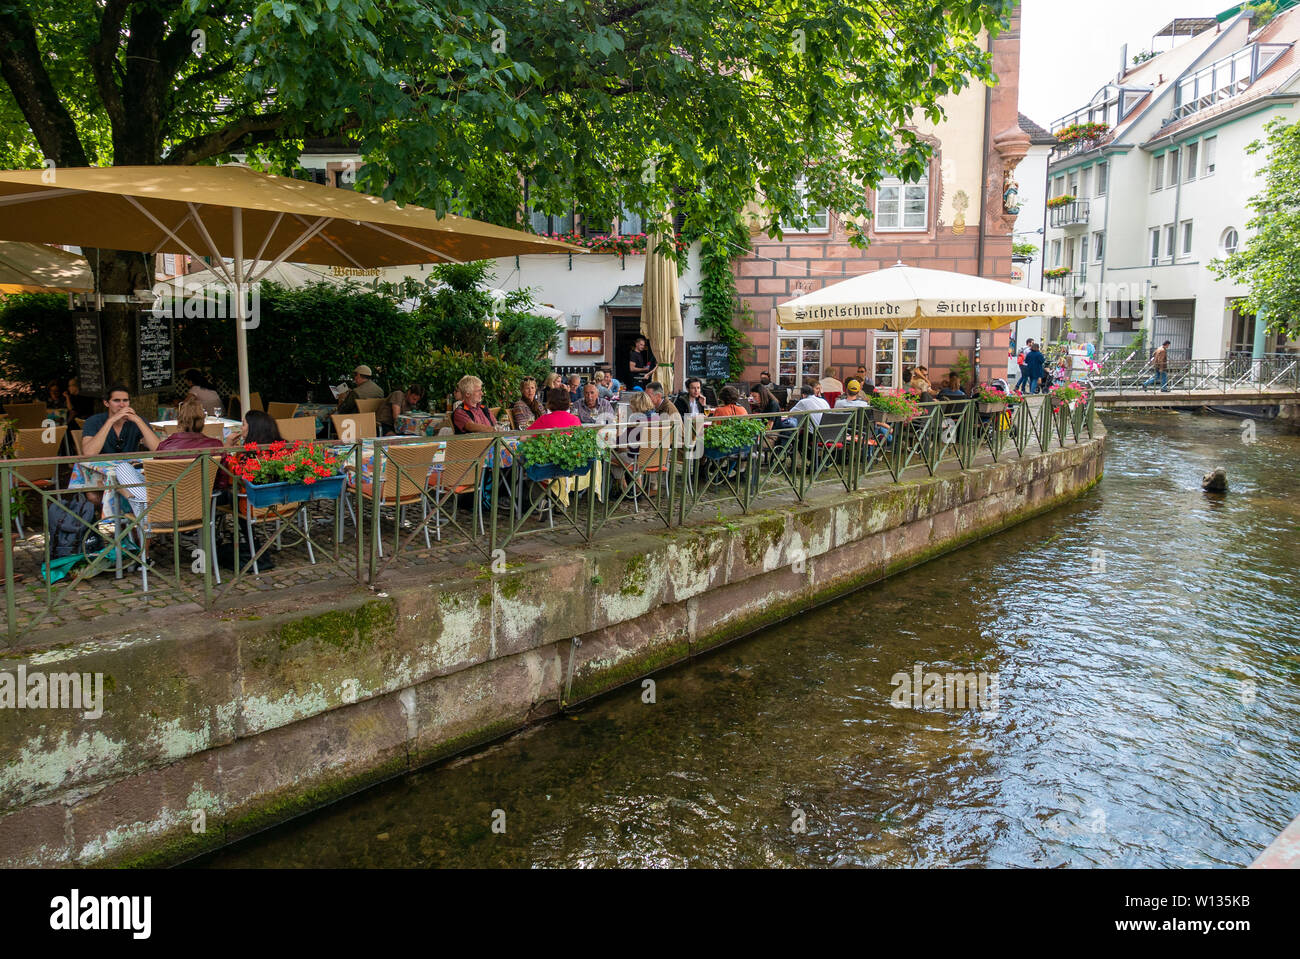 FREIBURG im Breisgau, Deutschland - Juni 15, 2019: Die Menschen auf den Terrassen der Bars und Restaurants neben den Kanälen Stockfoto